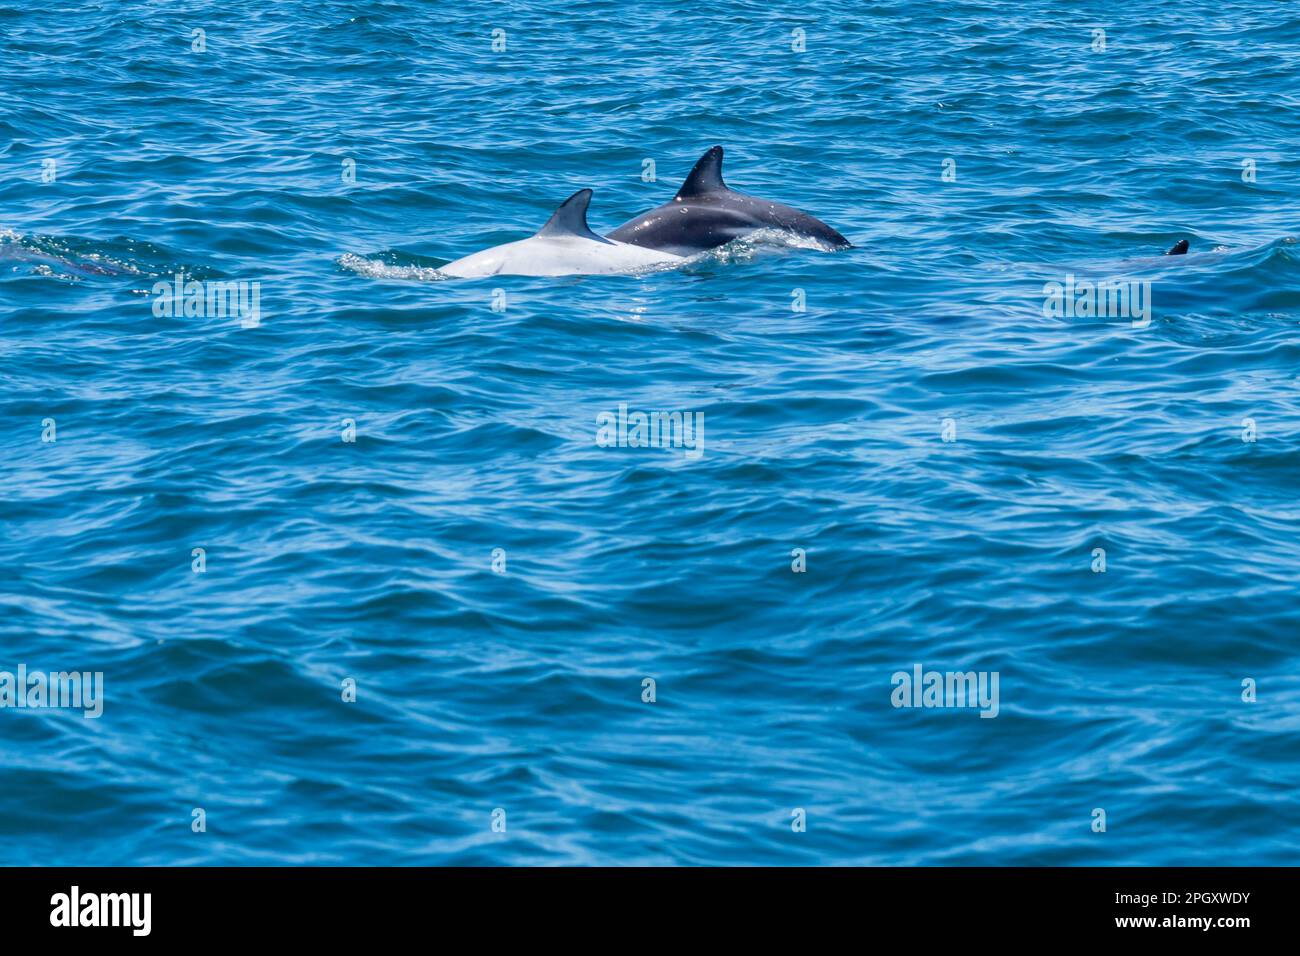 Ein weißer Delfin und ein Dusky-Delfin (Lagenorhynchus obscurus) tauchen zusammen im blauen Wasser auf, Halbinsel Valdes, Argentinien. Stockfoto